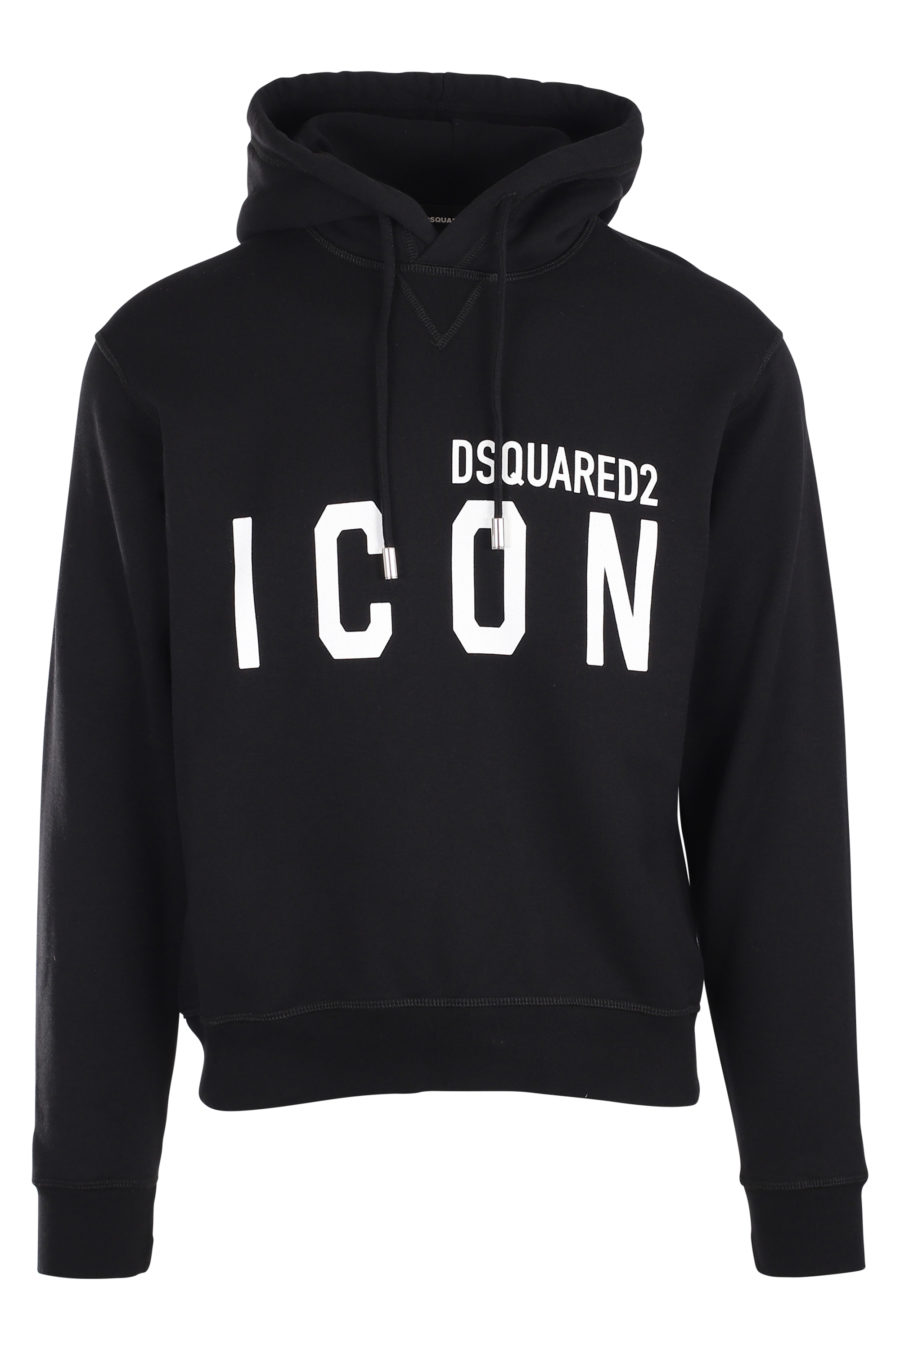 Black hooded sweatshirt with "icon" logo - IMG 9869